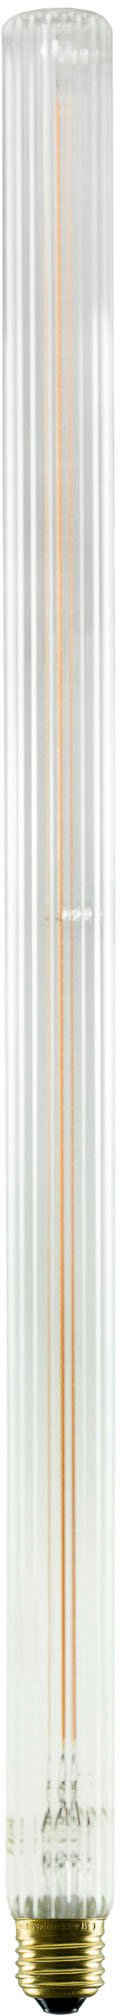 SEGULA LED-Leuchtmittel LED Long Tube 500 klar geriffelt, E27, 1 St., Extra-Warmweiß, LED Long Tube 500 klar geriffelt, E27, 5W, CRI 90, dimmbar